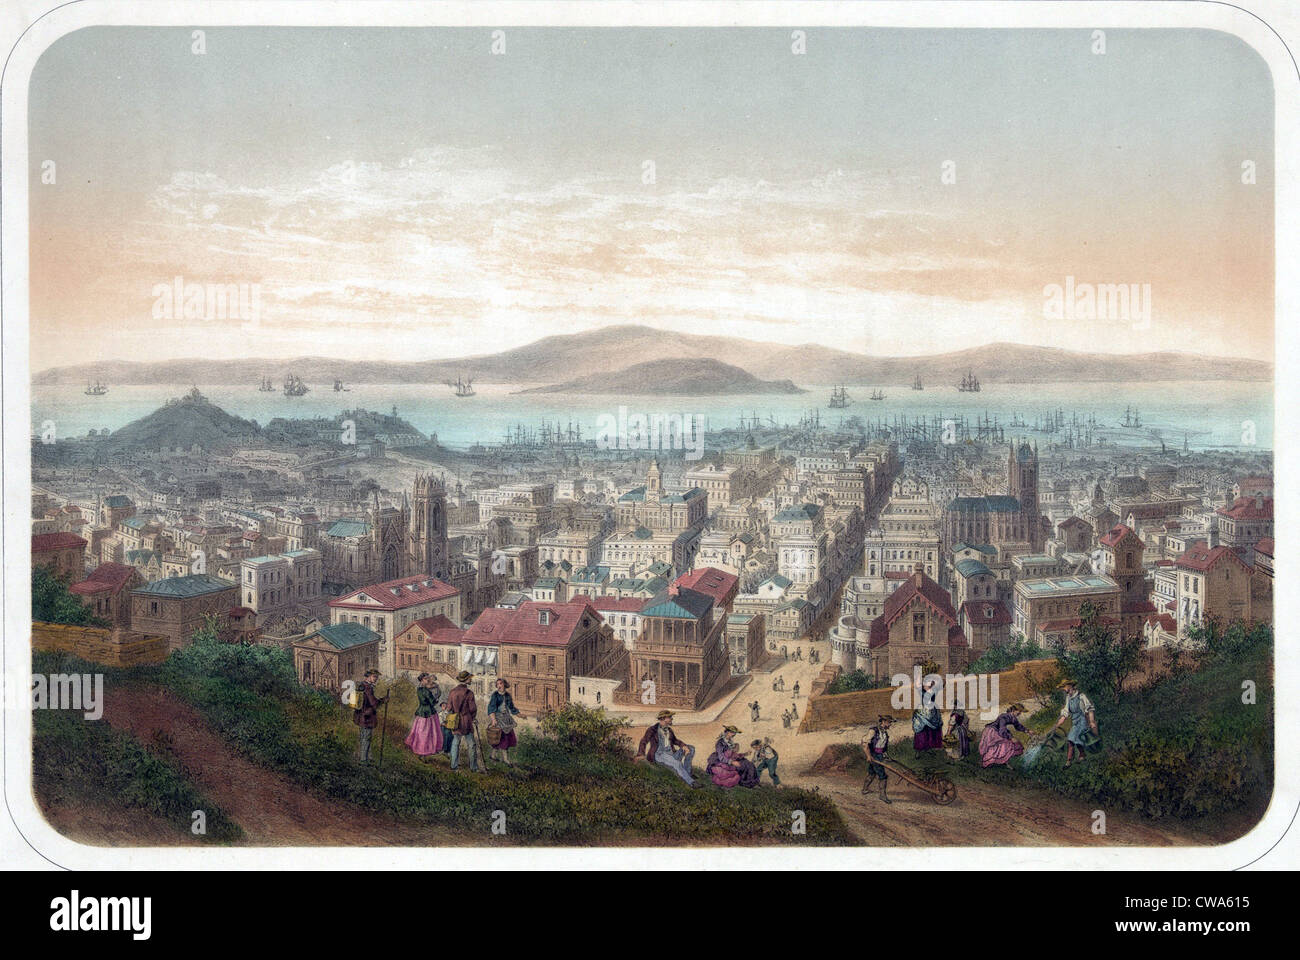 Blick auf San Francisco, mit Menschen im Vordergrund Hill und Schiffe in der Bucht. Ca. 1860. Stockfoto